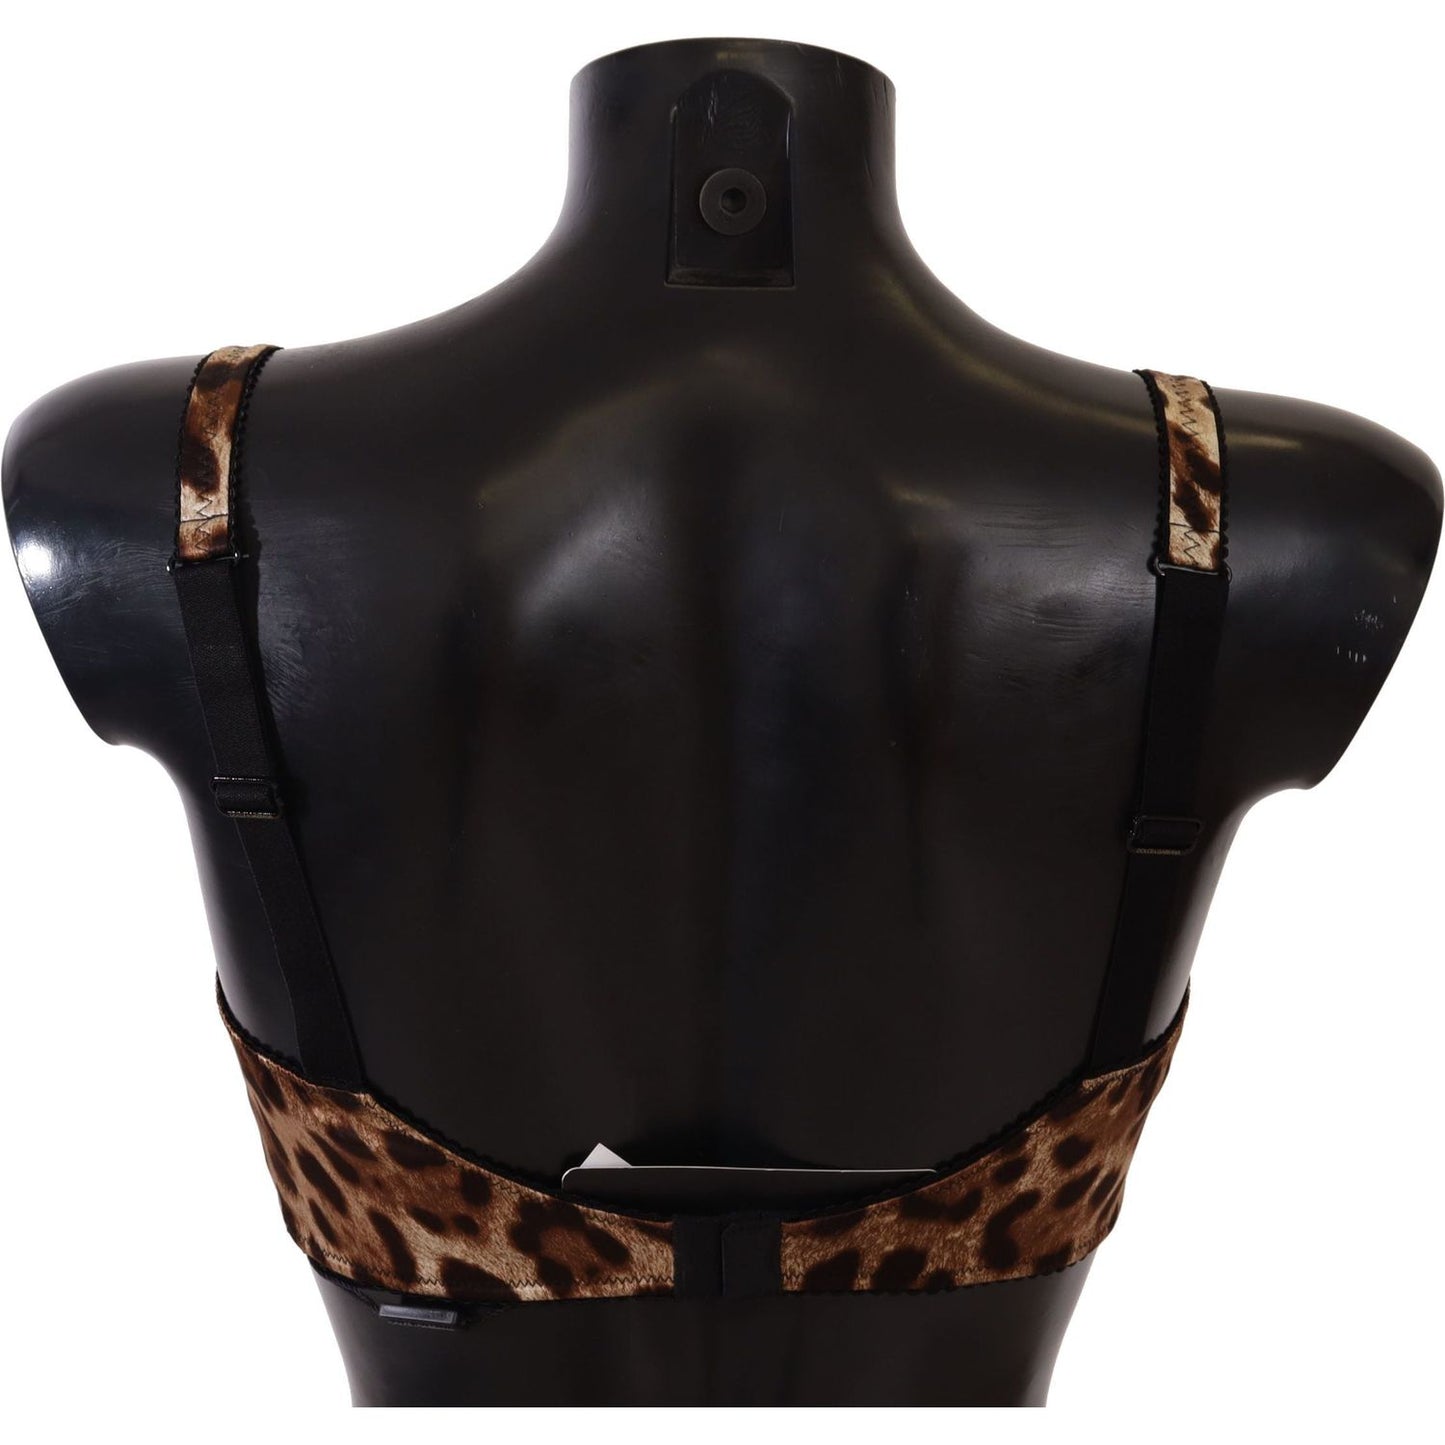 Dolce & Gabbana Elegant Silk Leopard Print Bra WOMAN UNDERWEAR brown-leopard-women-bra-underwear